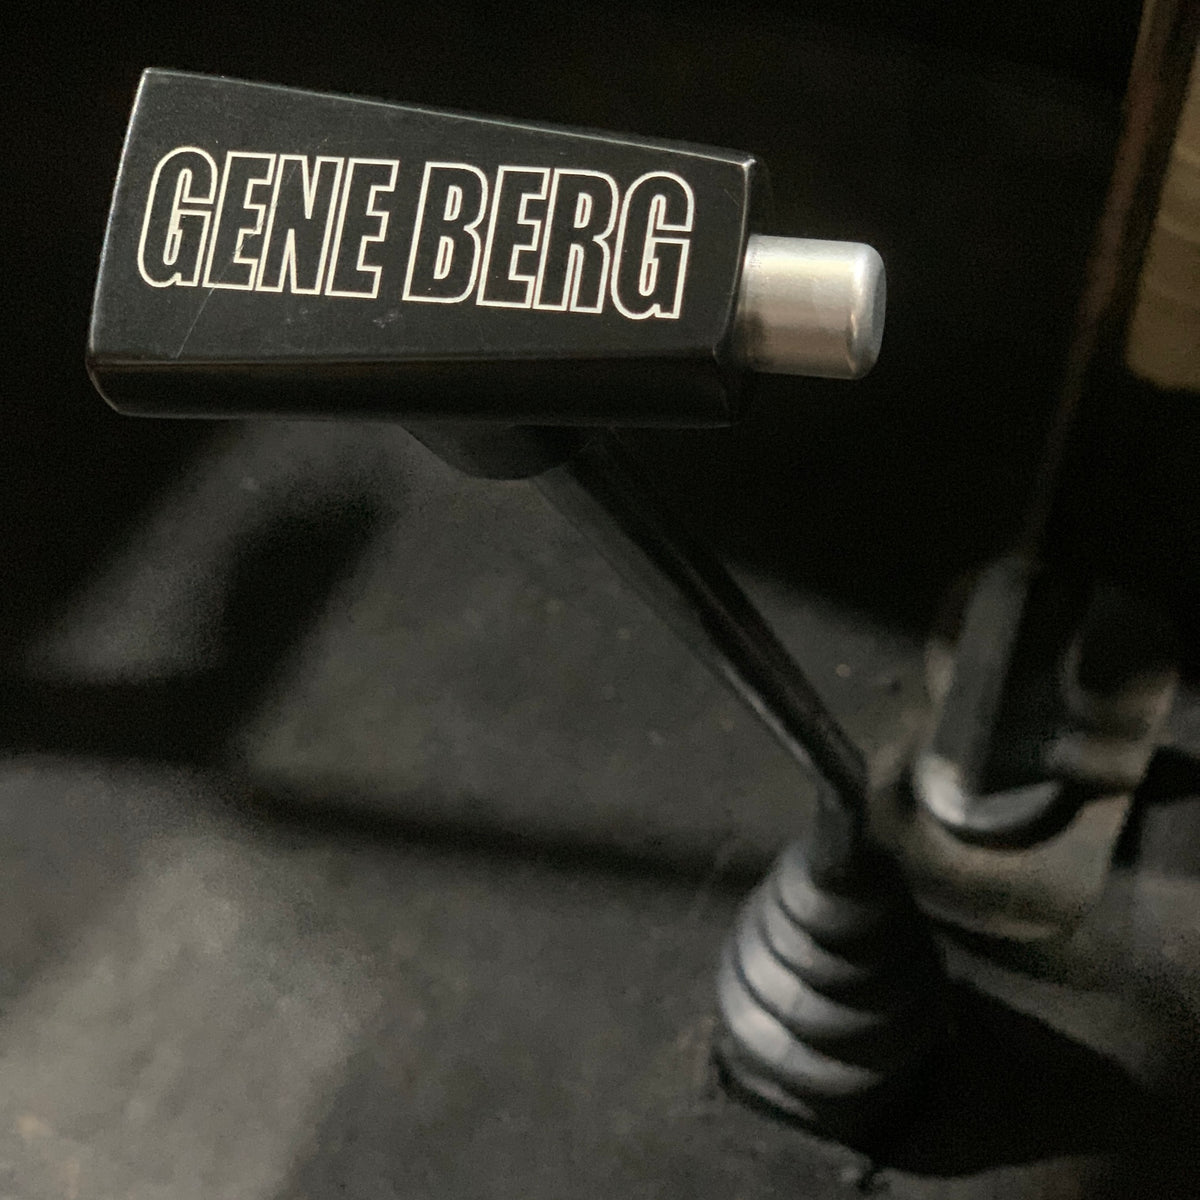 Gene Berg Shifter Split Screen / Bay Window RHD (Right Hand Drive)